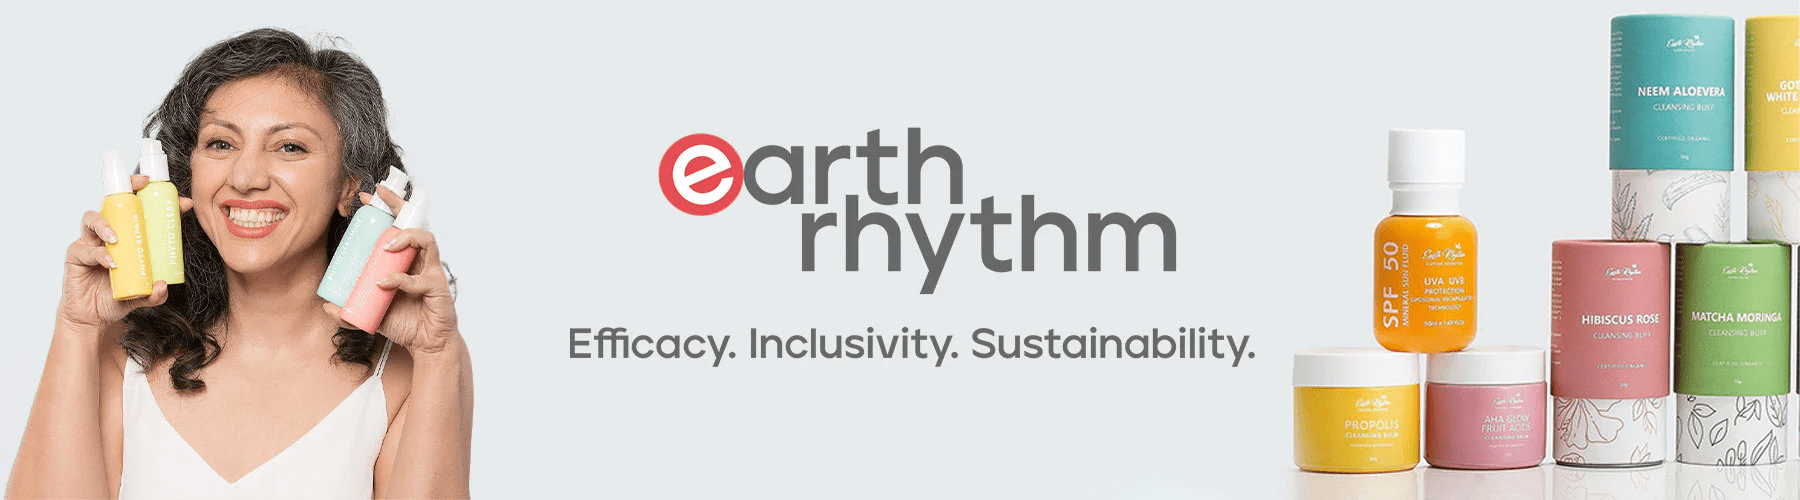 earth-rhythm